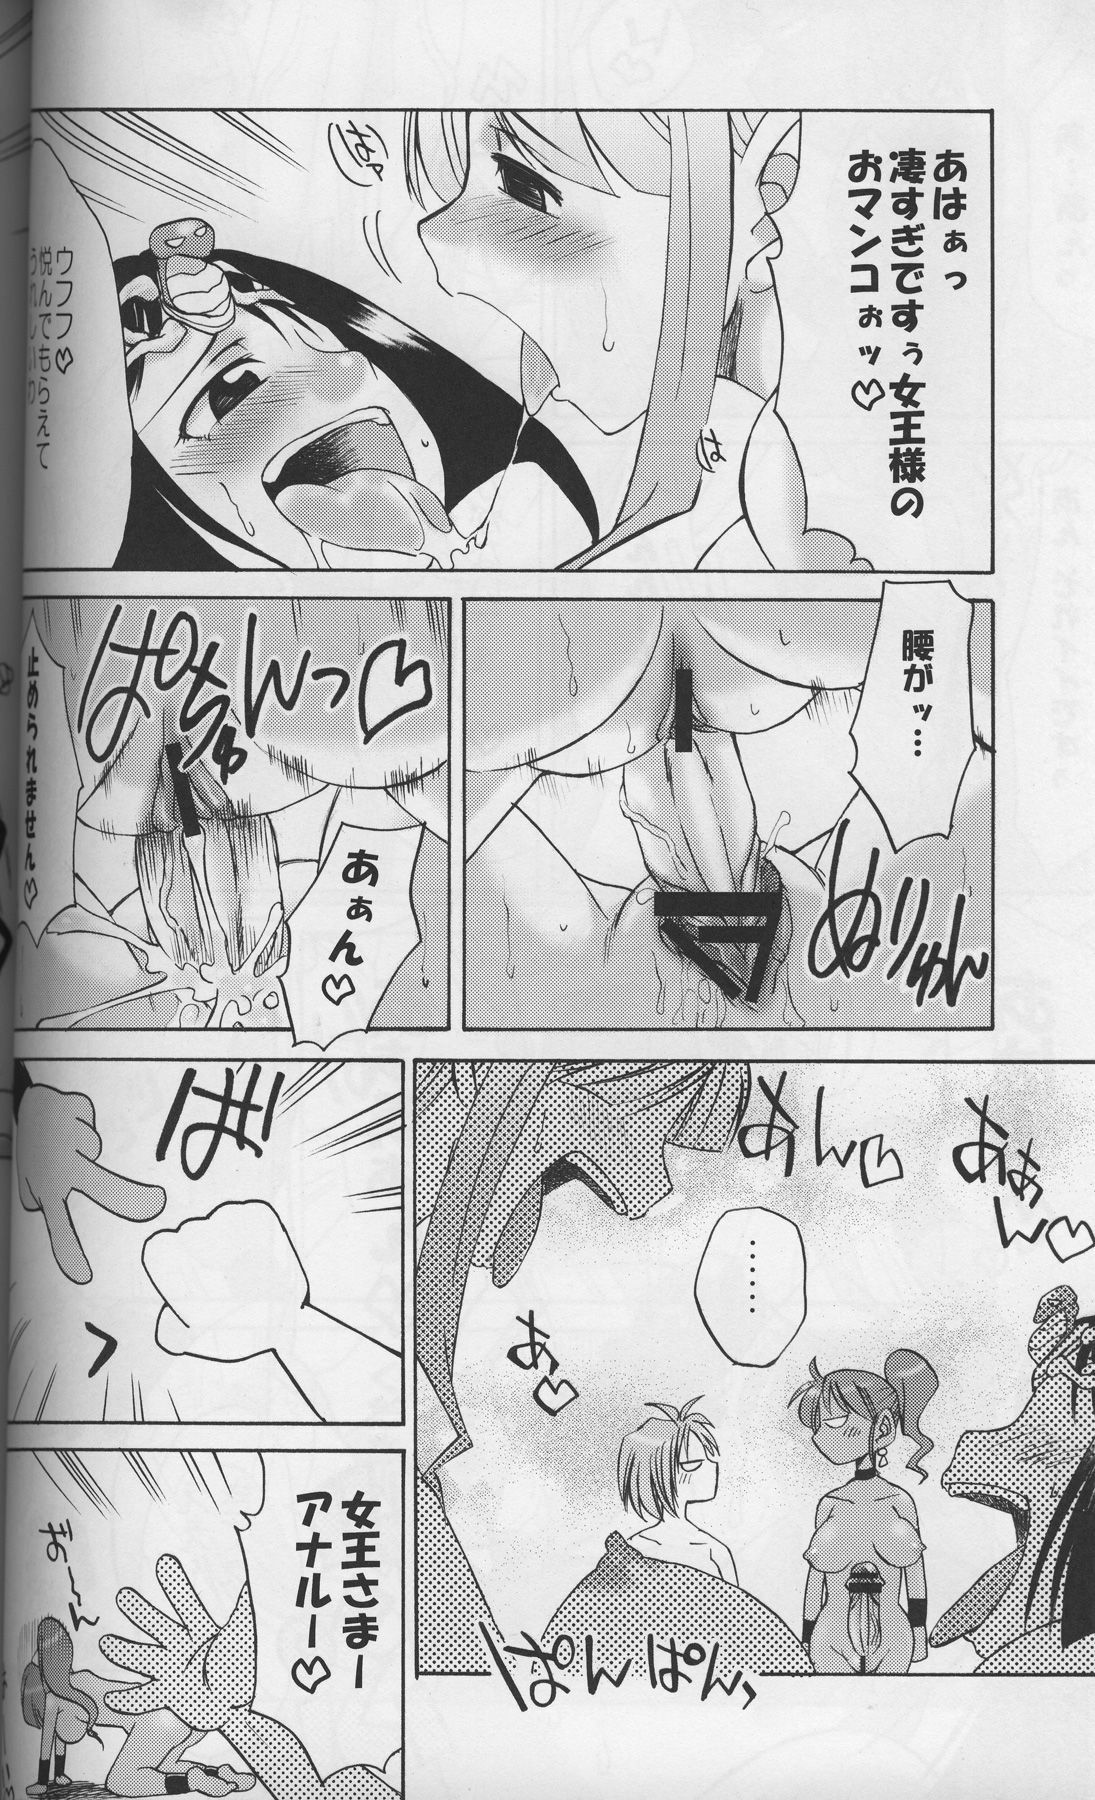 [Gekka Kaguya (Kaguya Hime Koubou)] Komakasugite Tsutawaranai Ero Doujin Senshuken Haru no Nijikan SPECIAL (Various) page 17 full